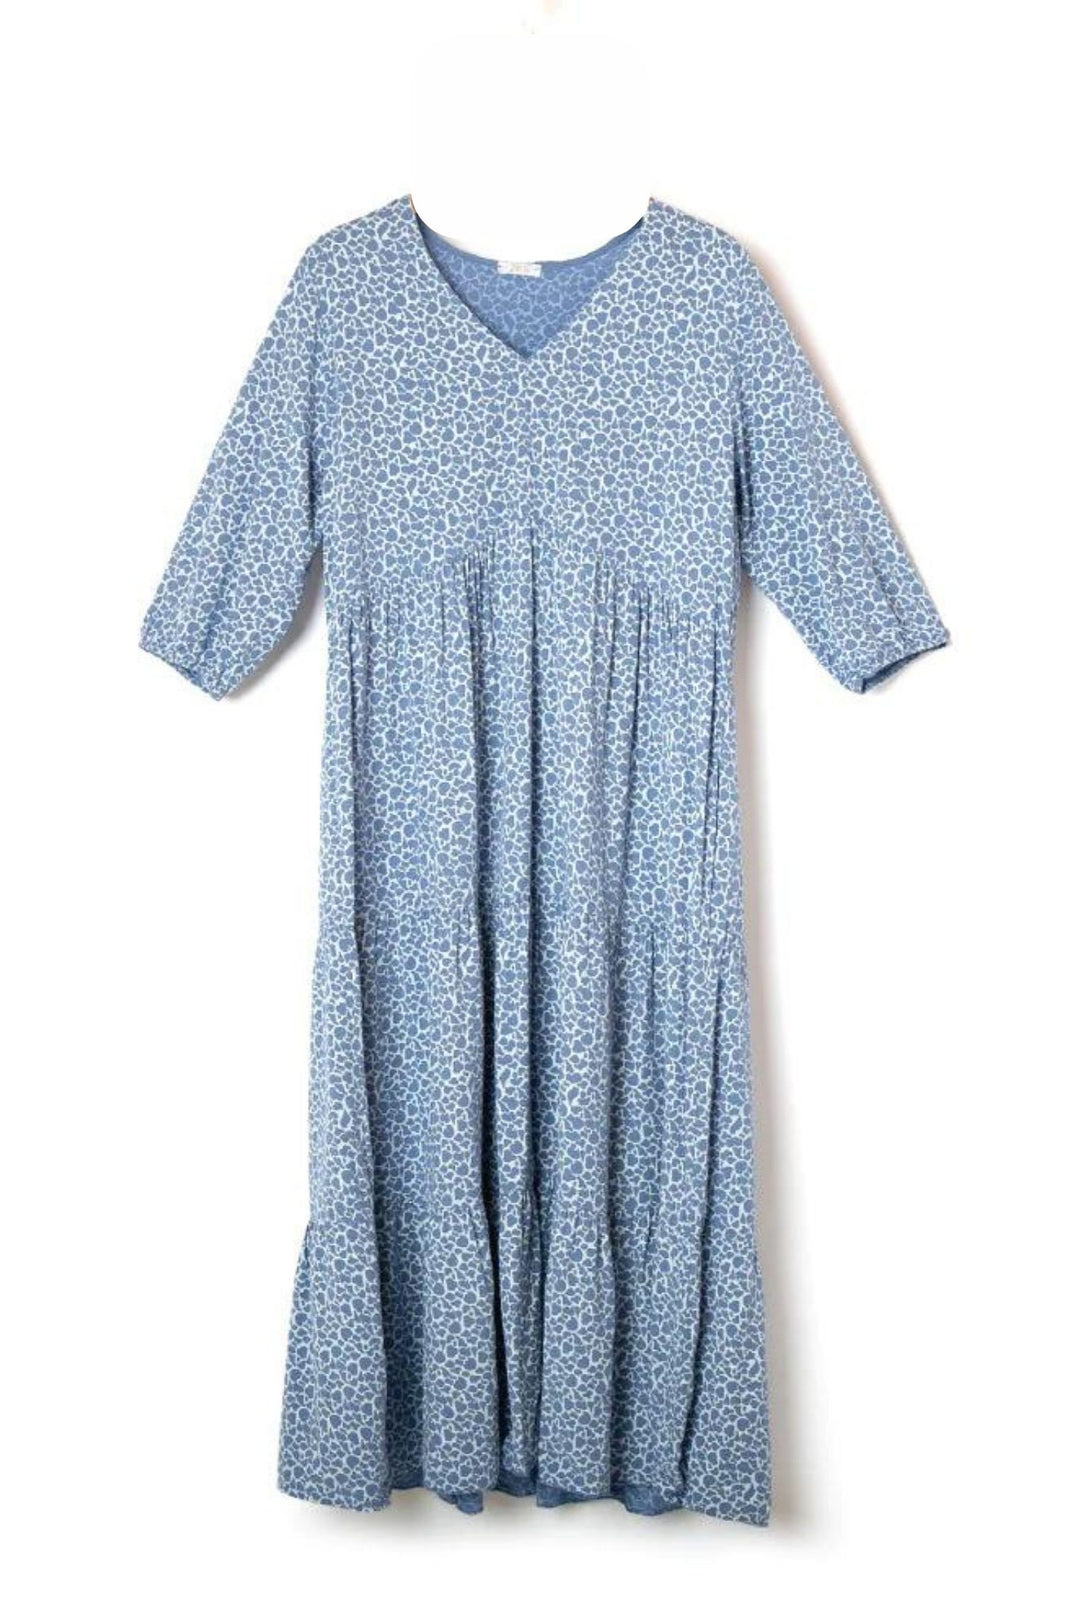 Denim Blue Animal Print Tiered Maxi Dress